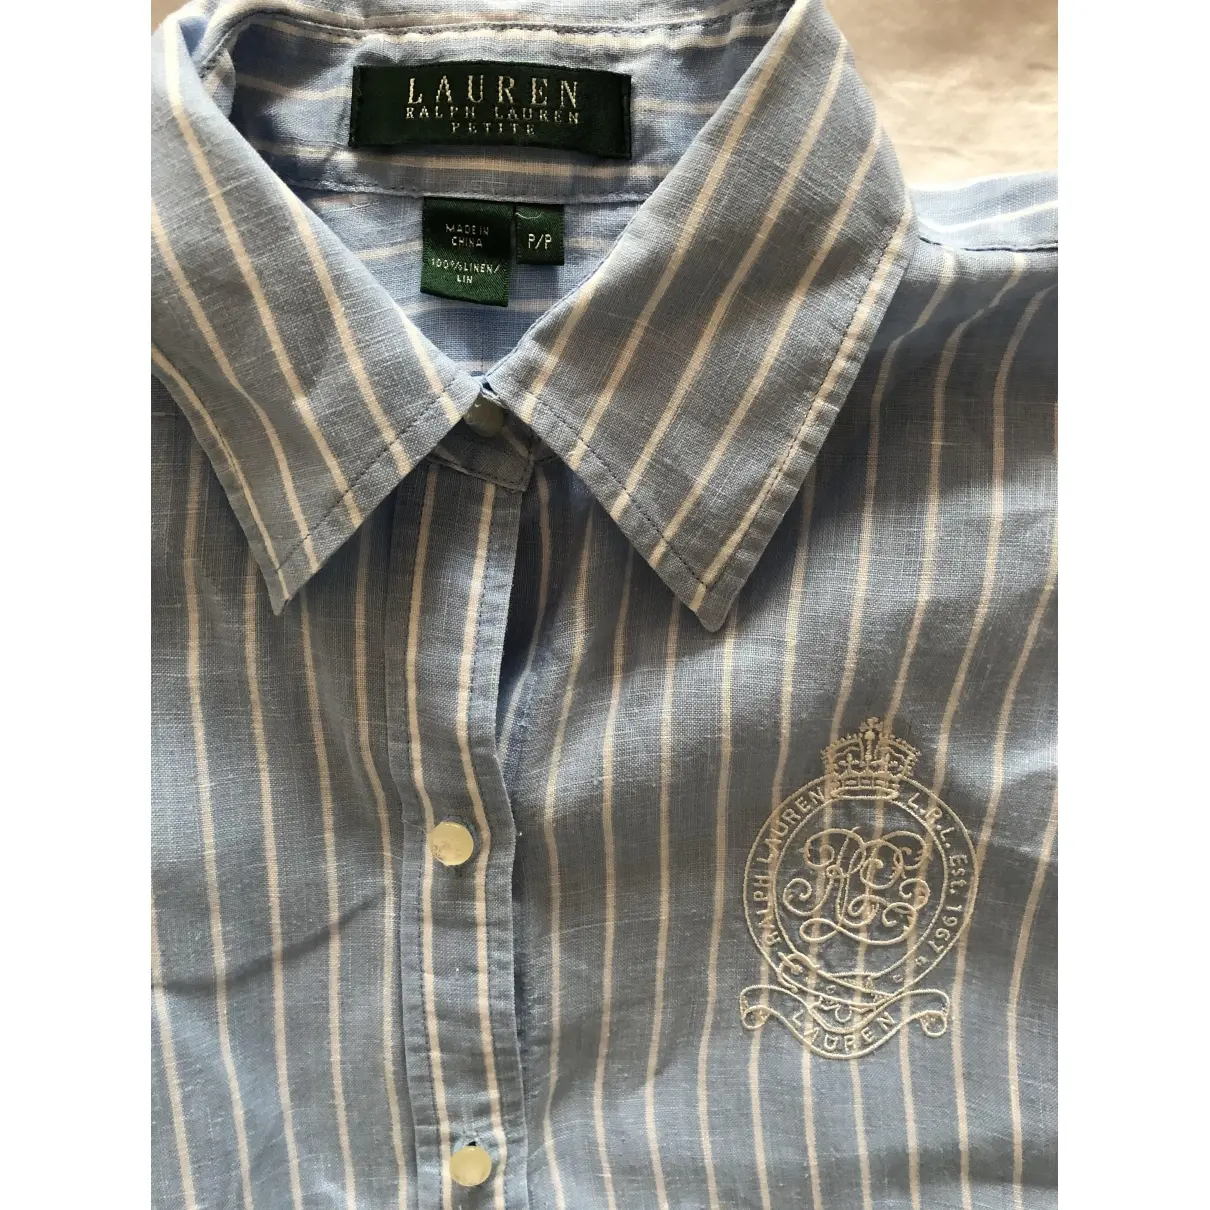 Buy Lauren Ralph Lauren Linen blouse online